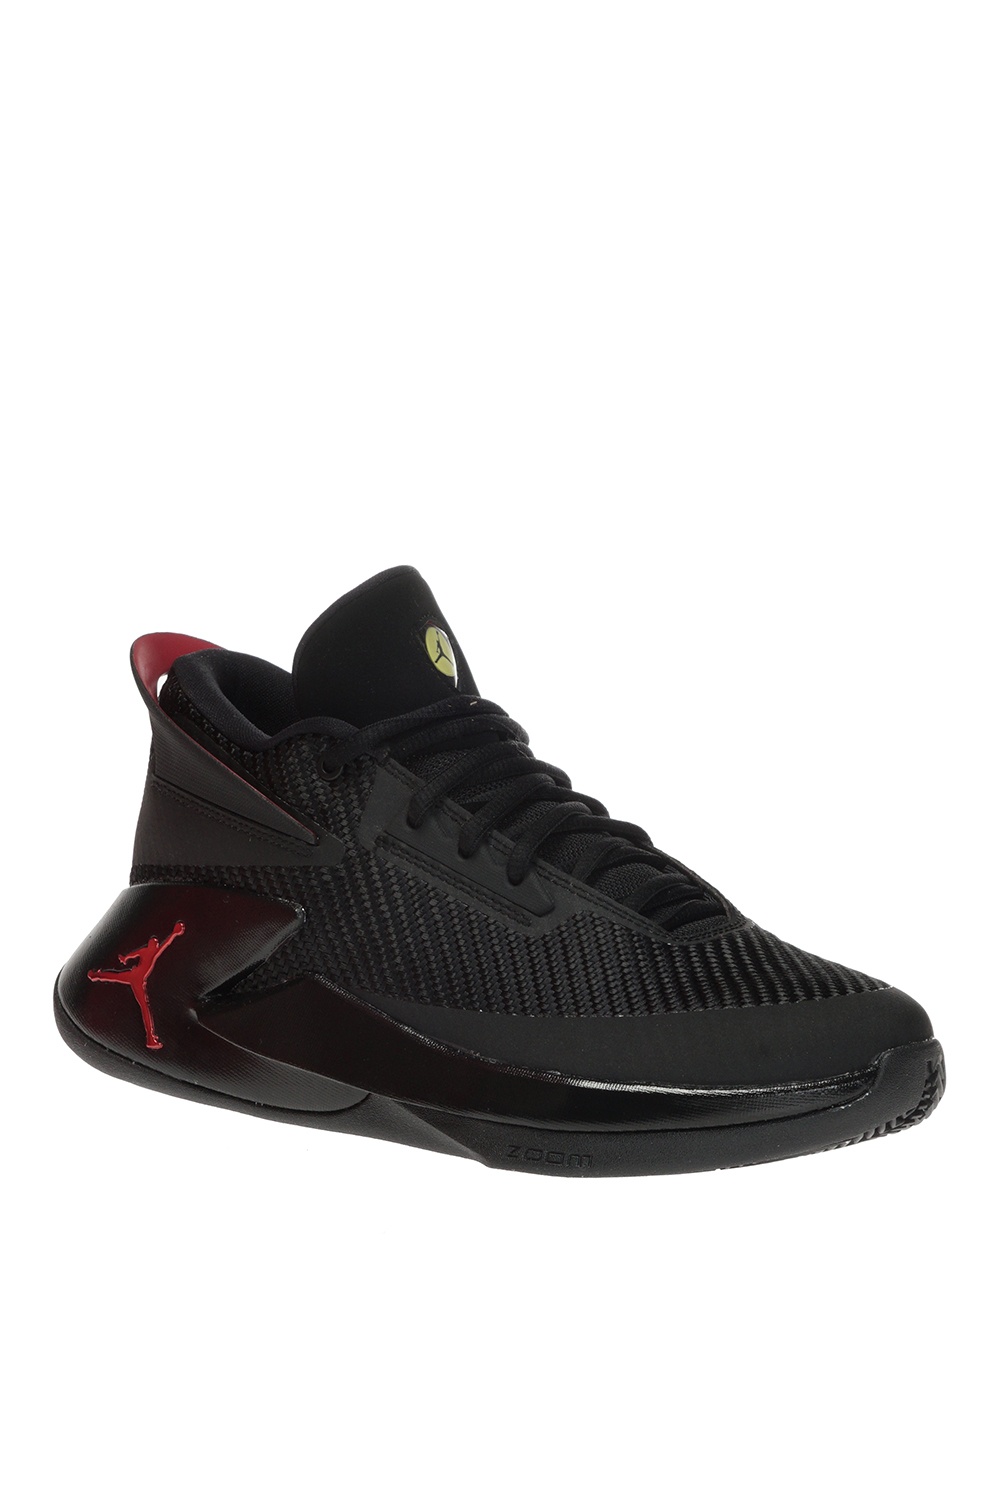 Jordan Fly Lockdown' sneakers Nike 